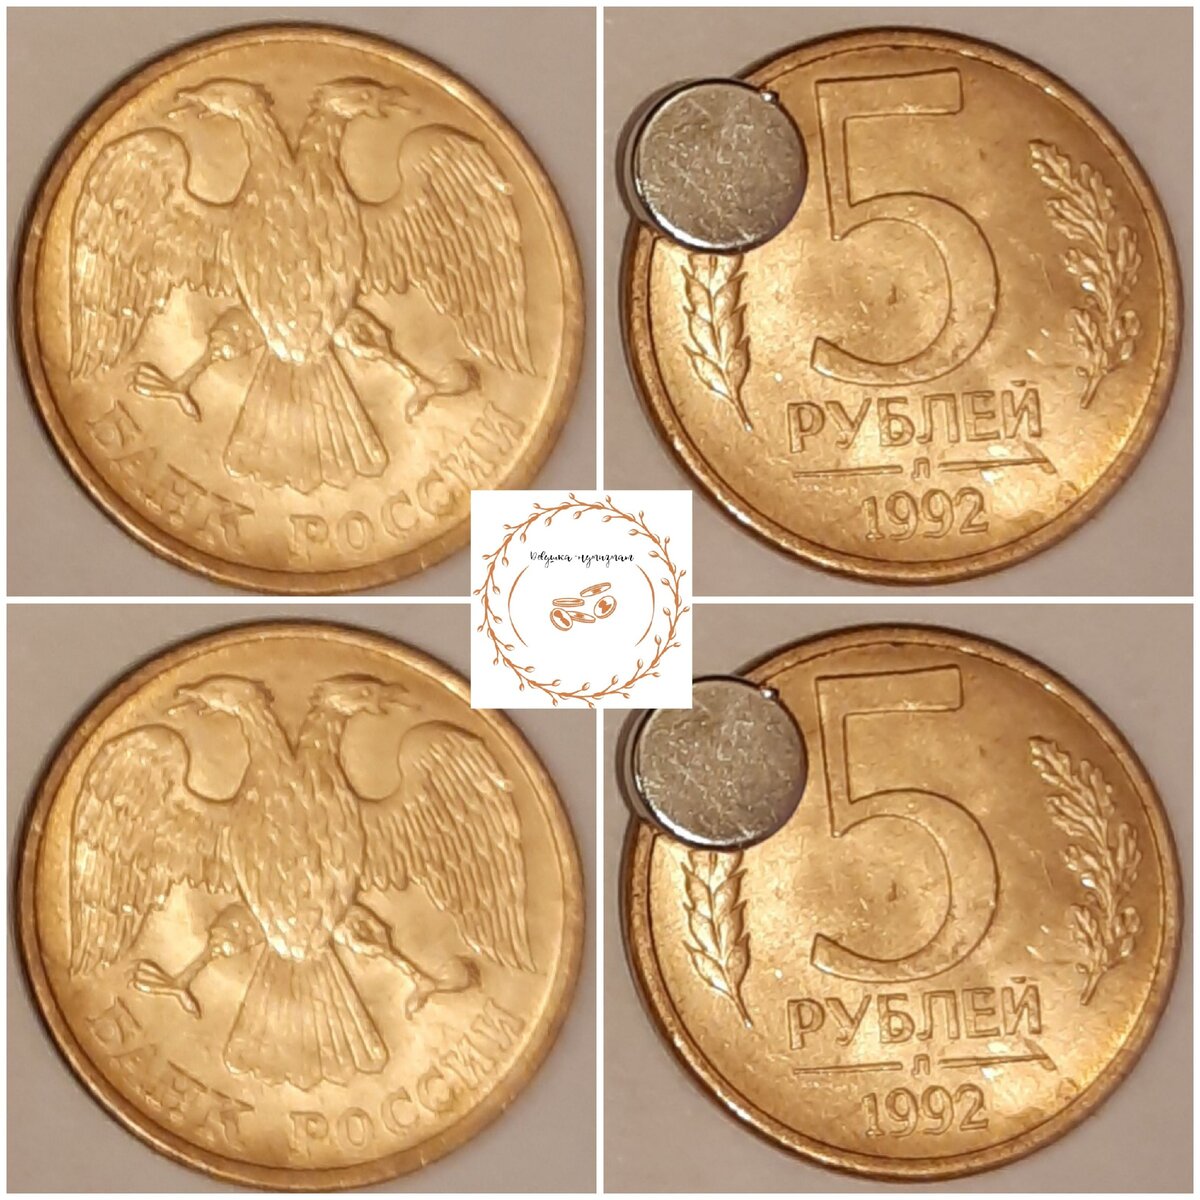 10 рублей редкие монеты стоимость с фото